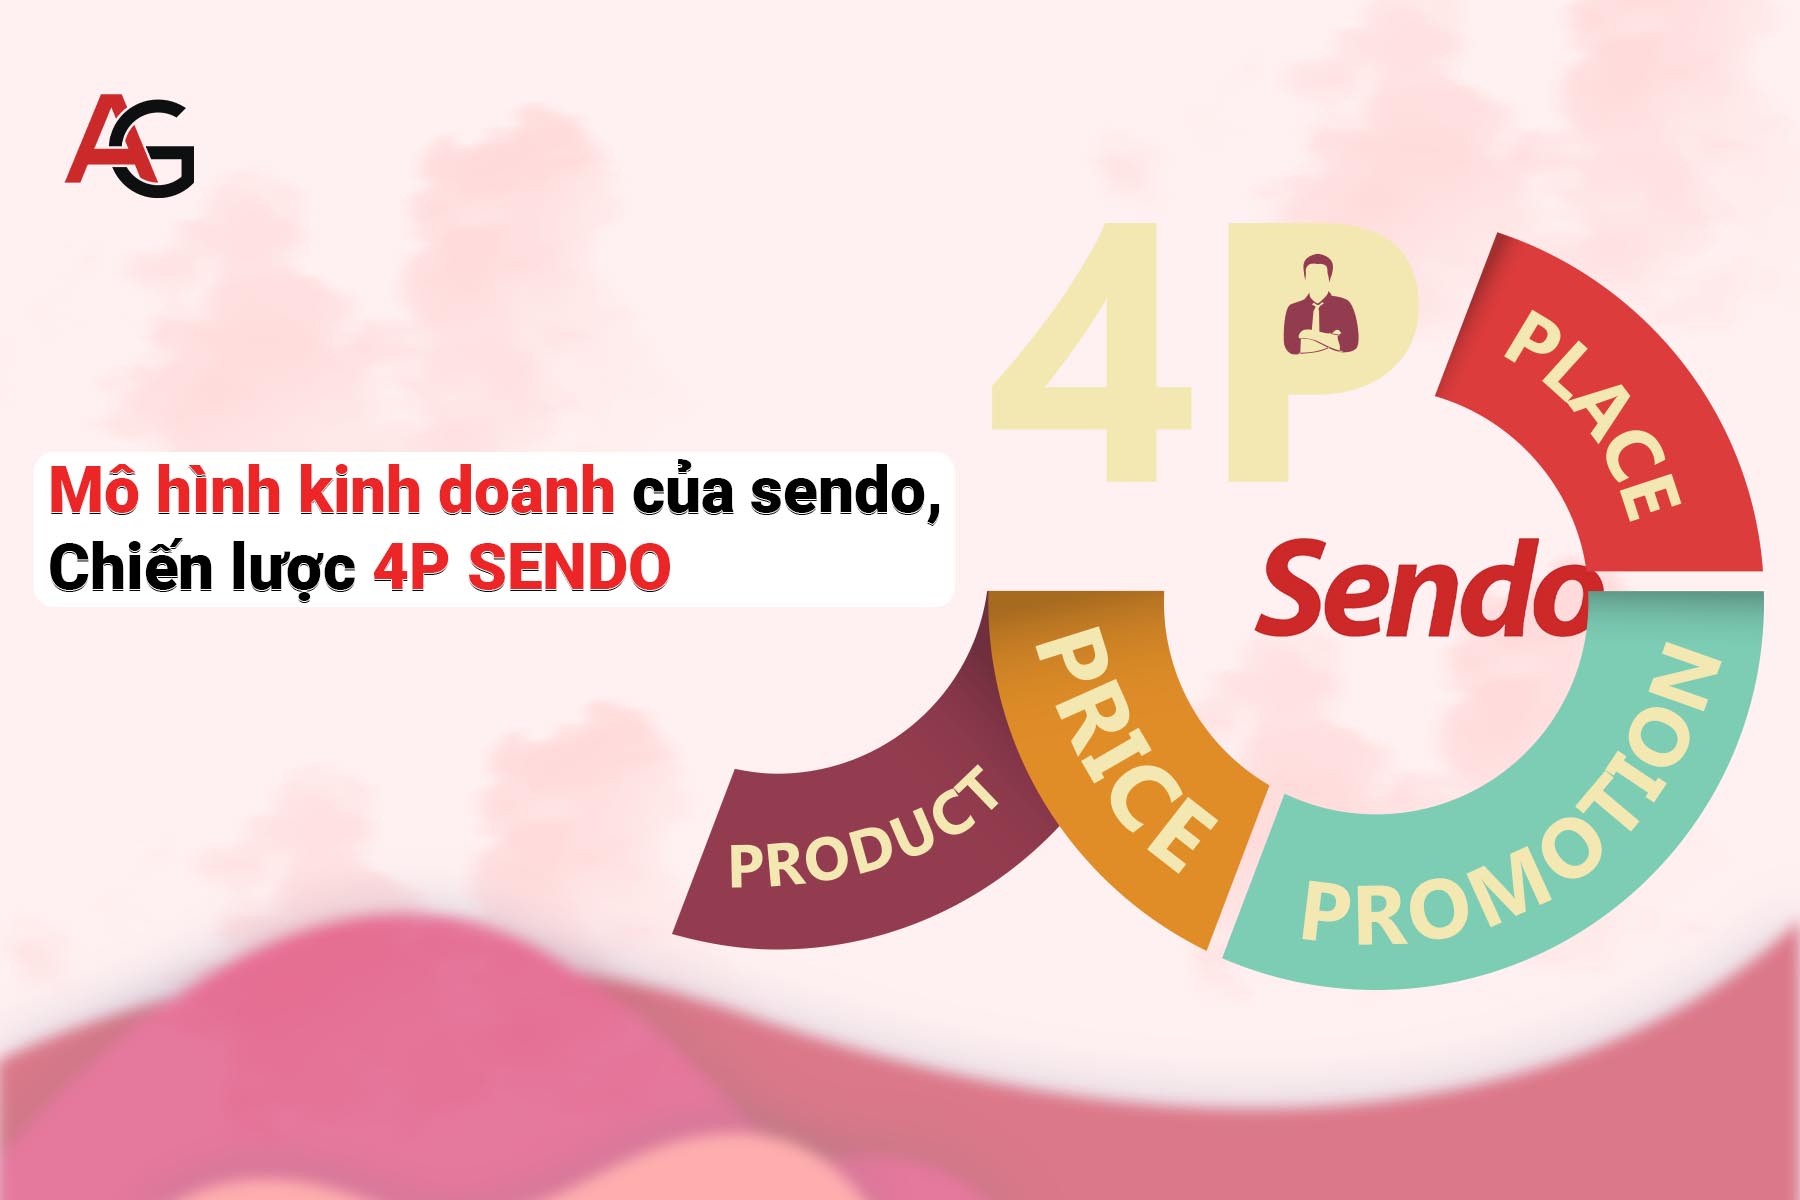 Mô hình kinh doanh của Sendo chiến lược 4P